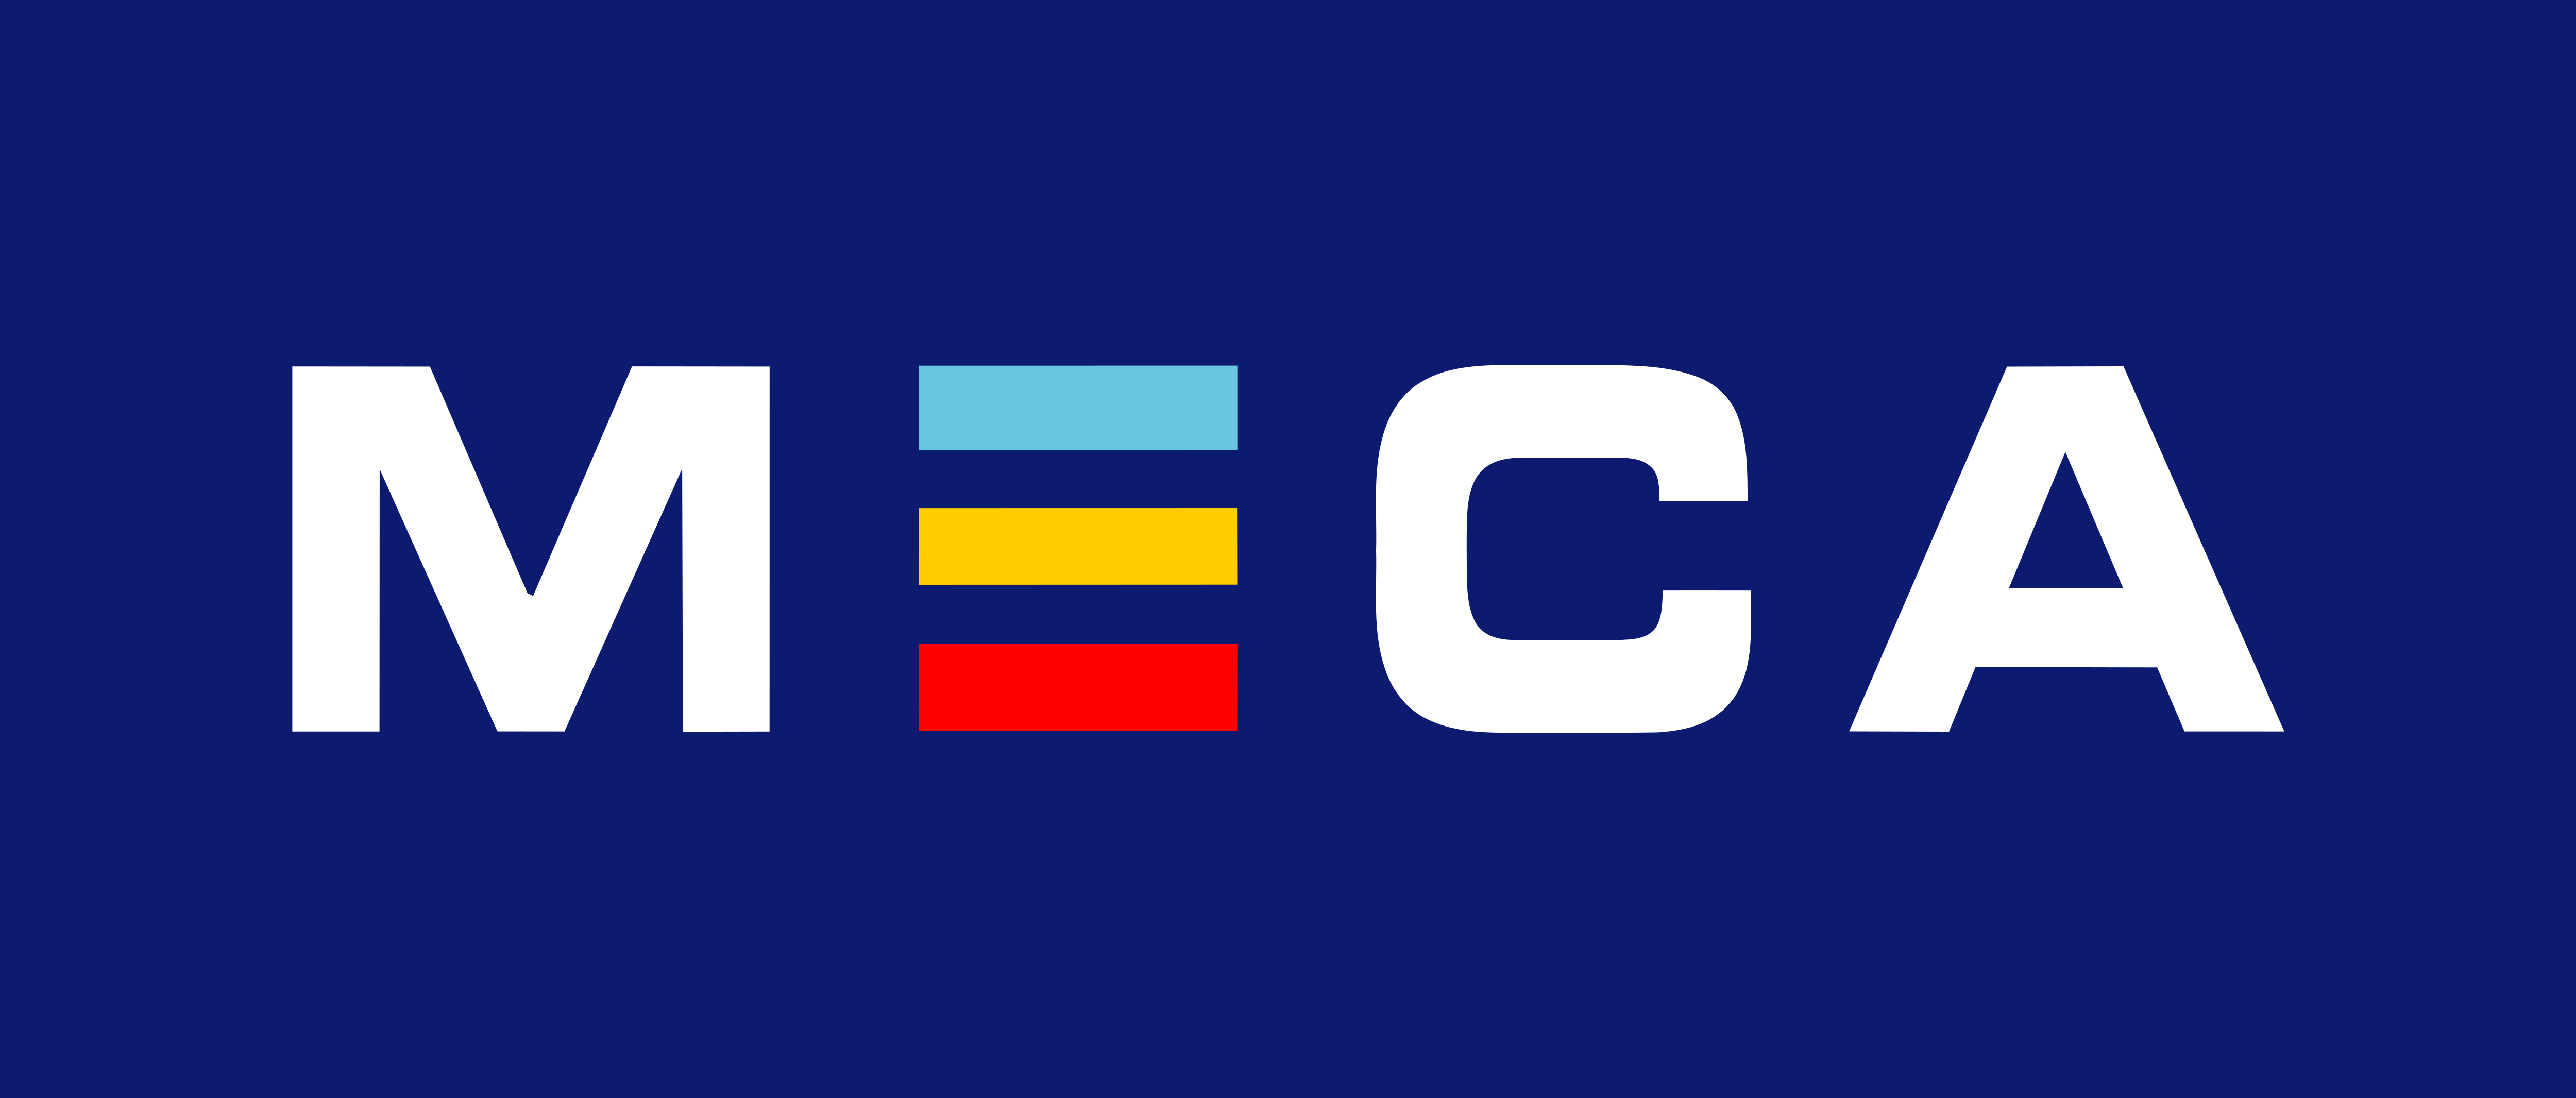 MECA_Logo_HolmgrensBil.png